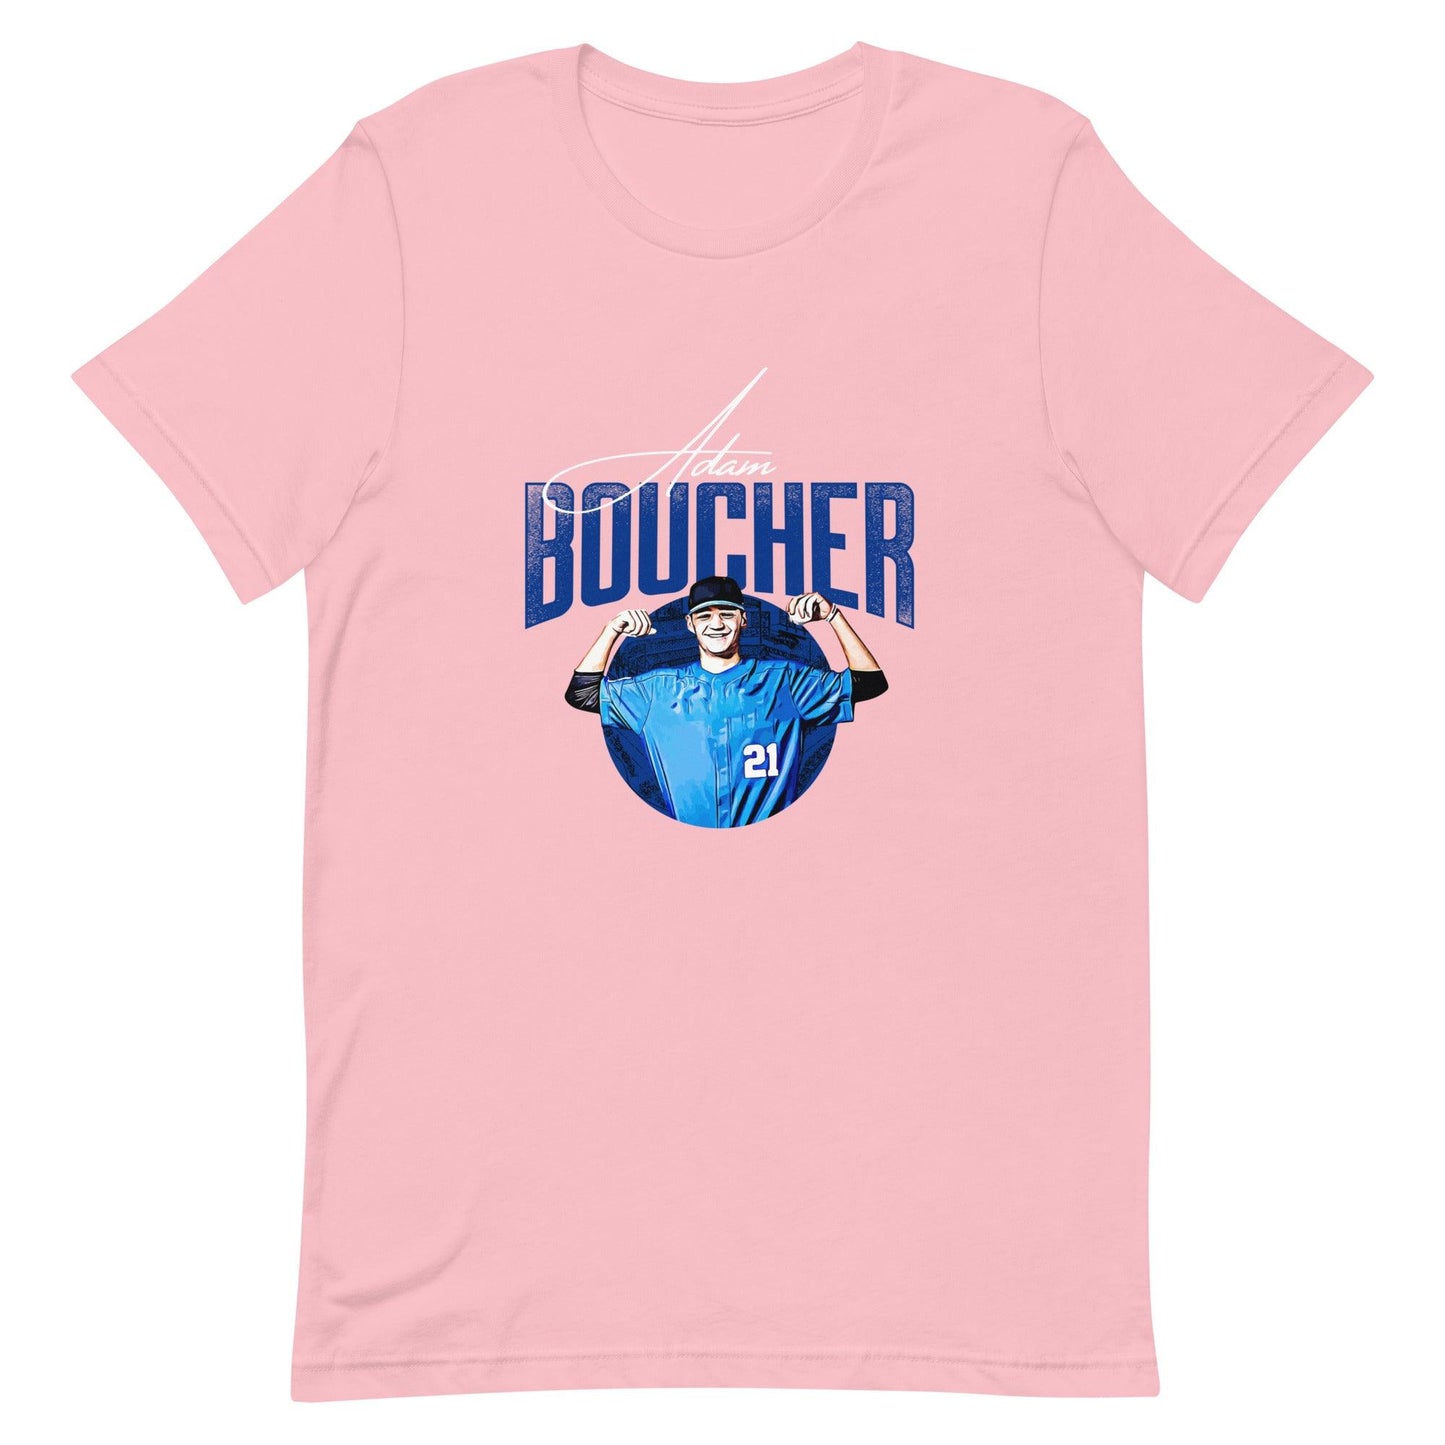 Adam Boucher “Essential” t-shirt - Fan Arch